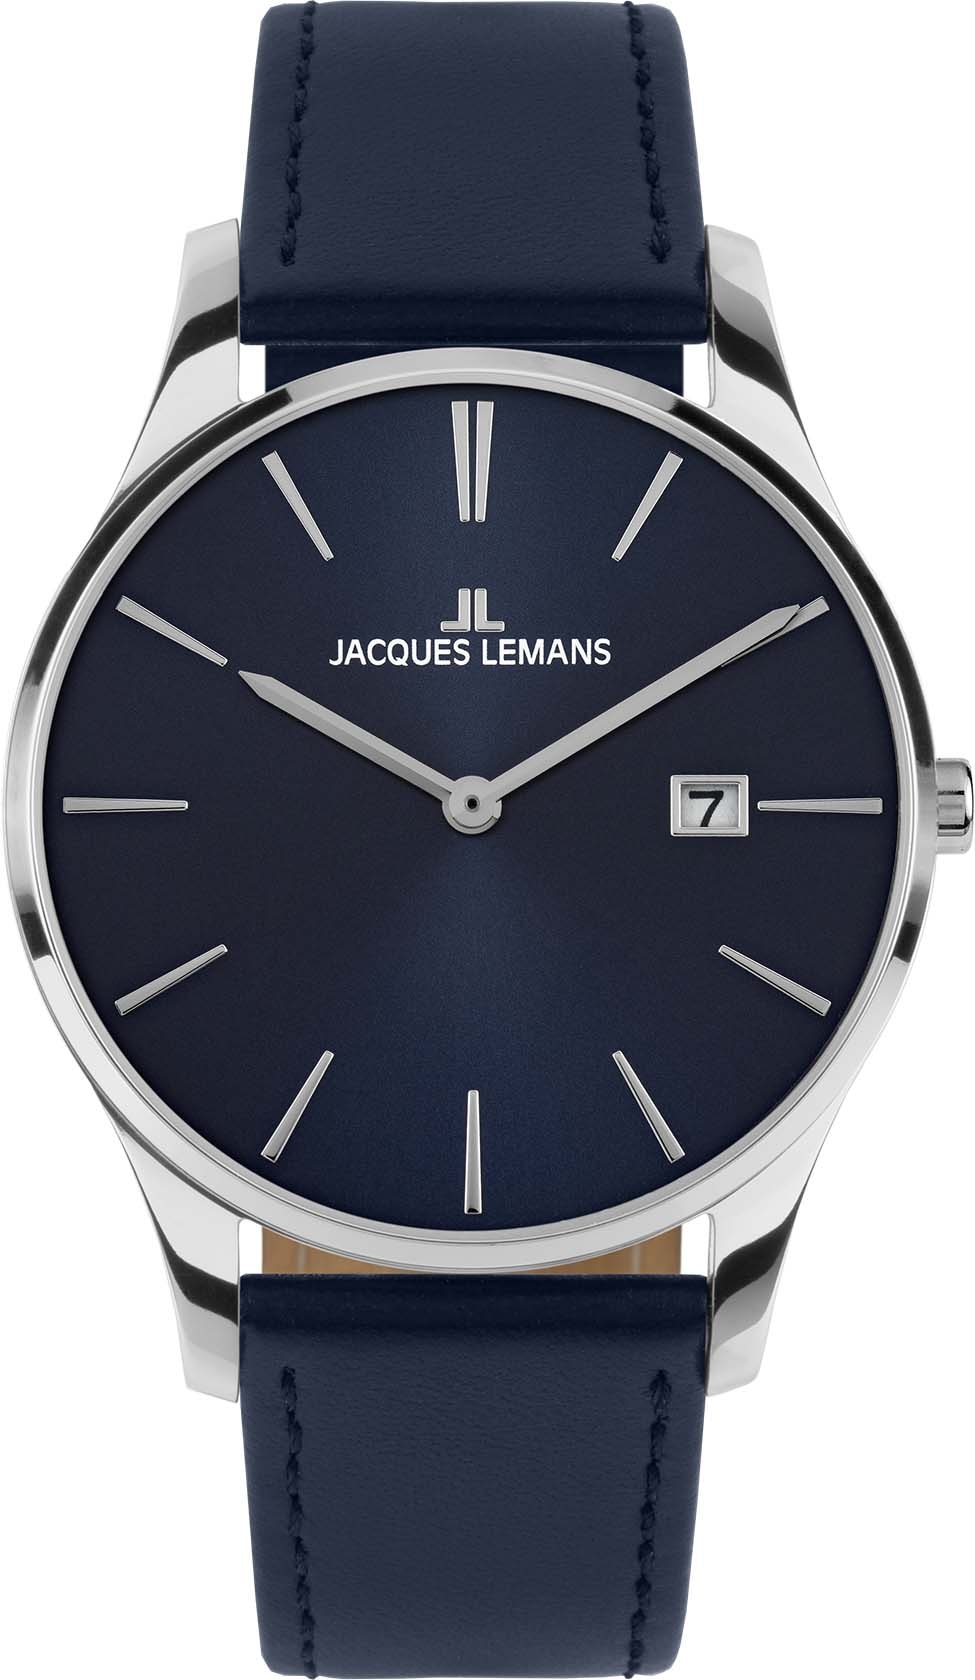 Jacques Lemans Quarzuhr »London, 1-2122C«, Armbanduhr, Damenuhr, Datum, gehärtetes Crystexglas